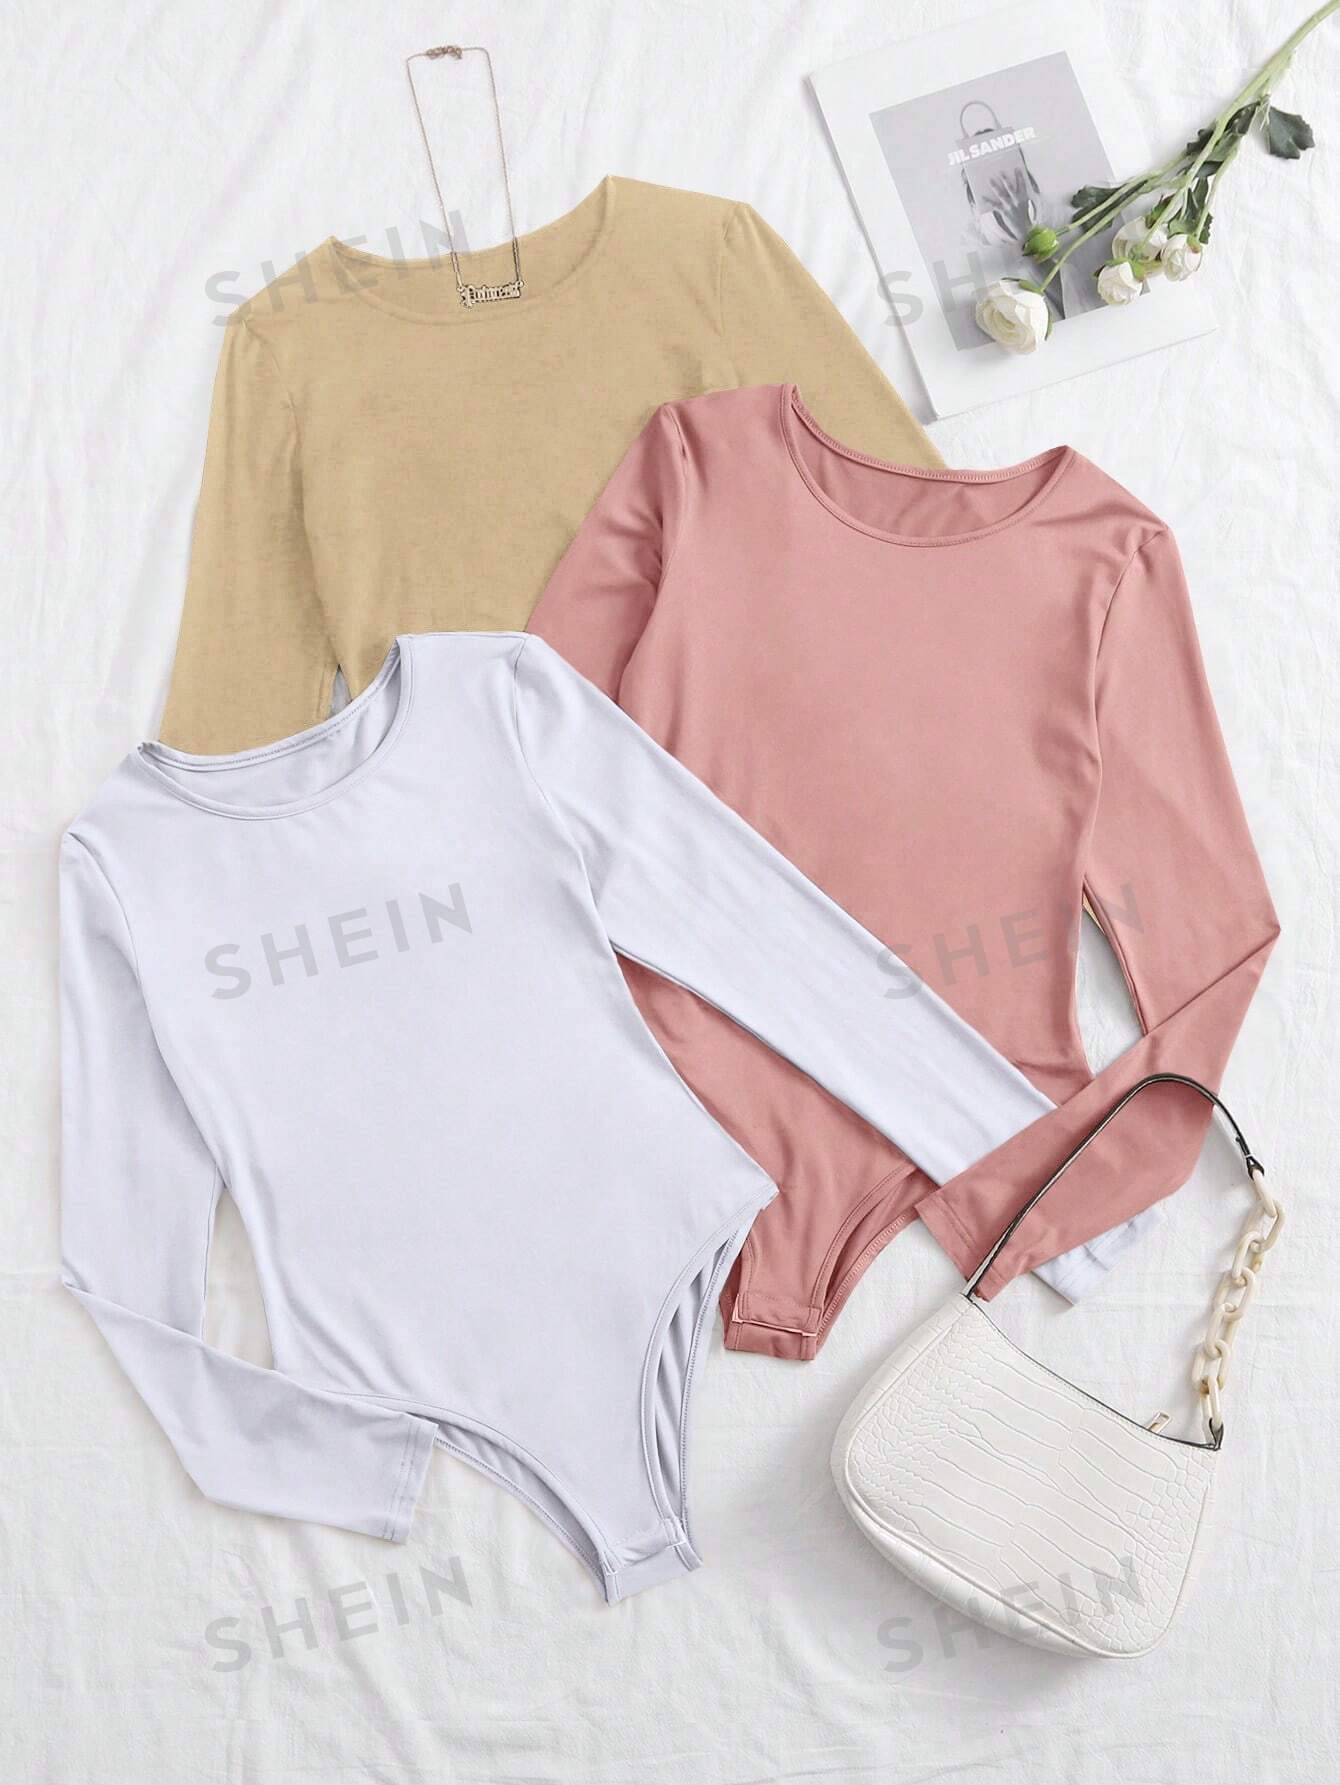 shein essnce трехцветное облегающее боди футболка с длинными рукавами многоцветный SHEIN Essnce Трехцветное облегающее боди-футболка с длинными рукавами, многоцветный